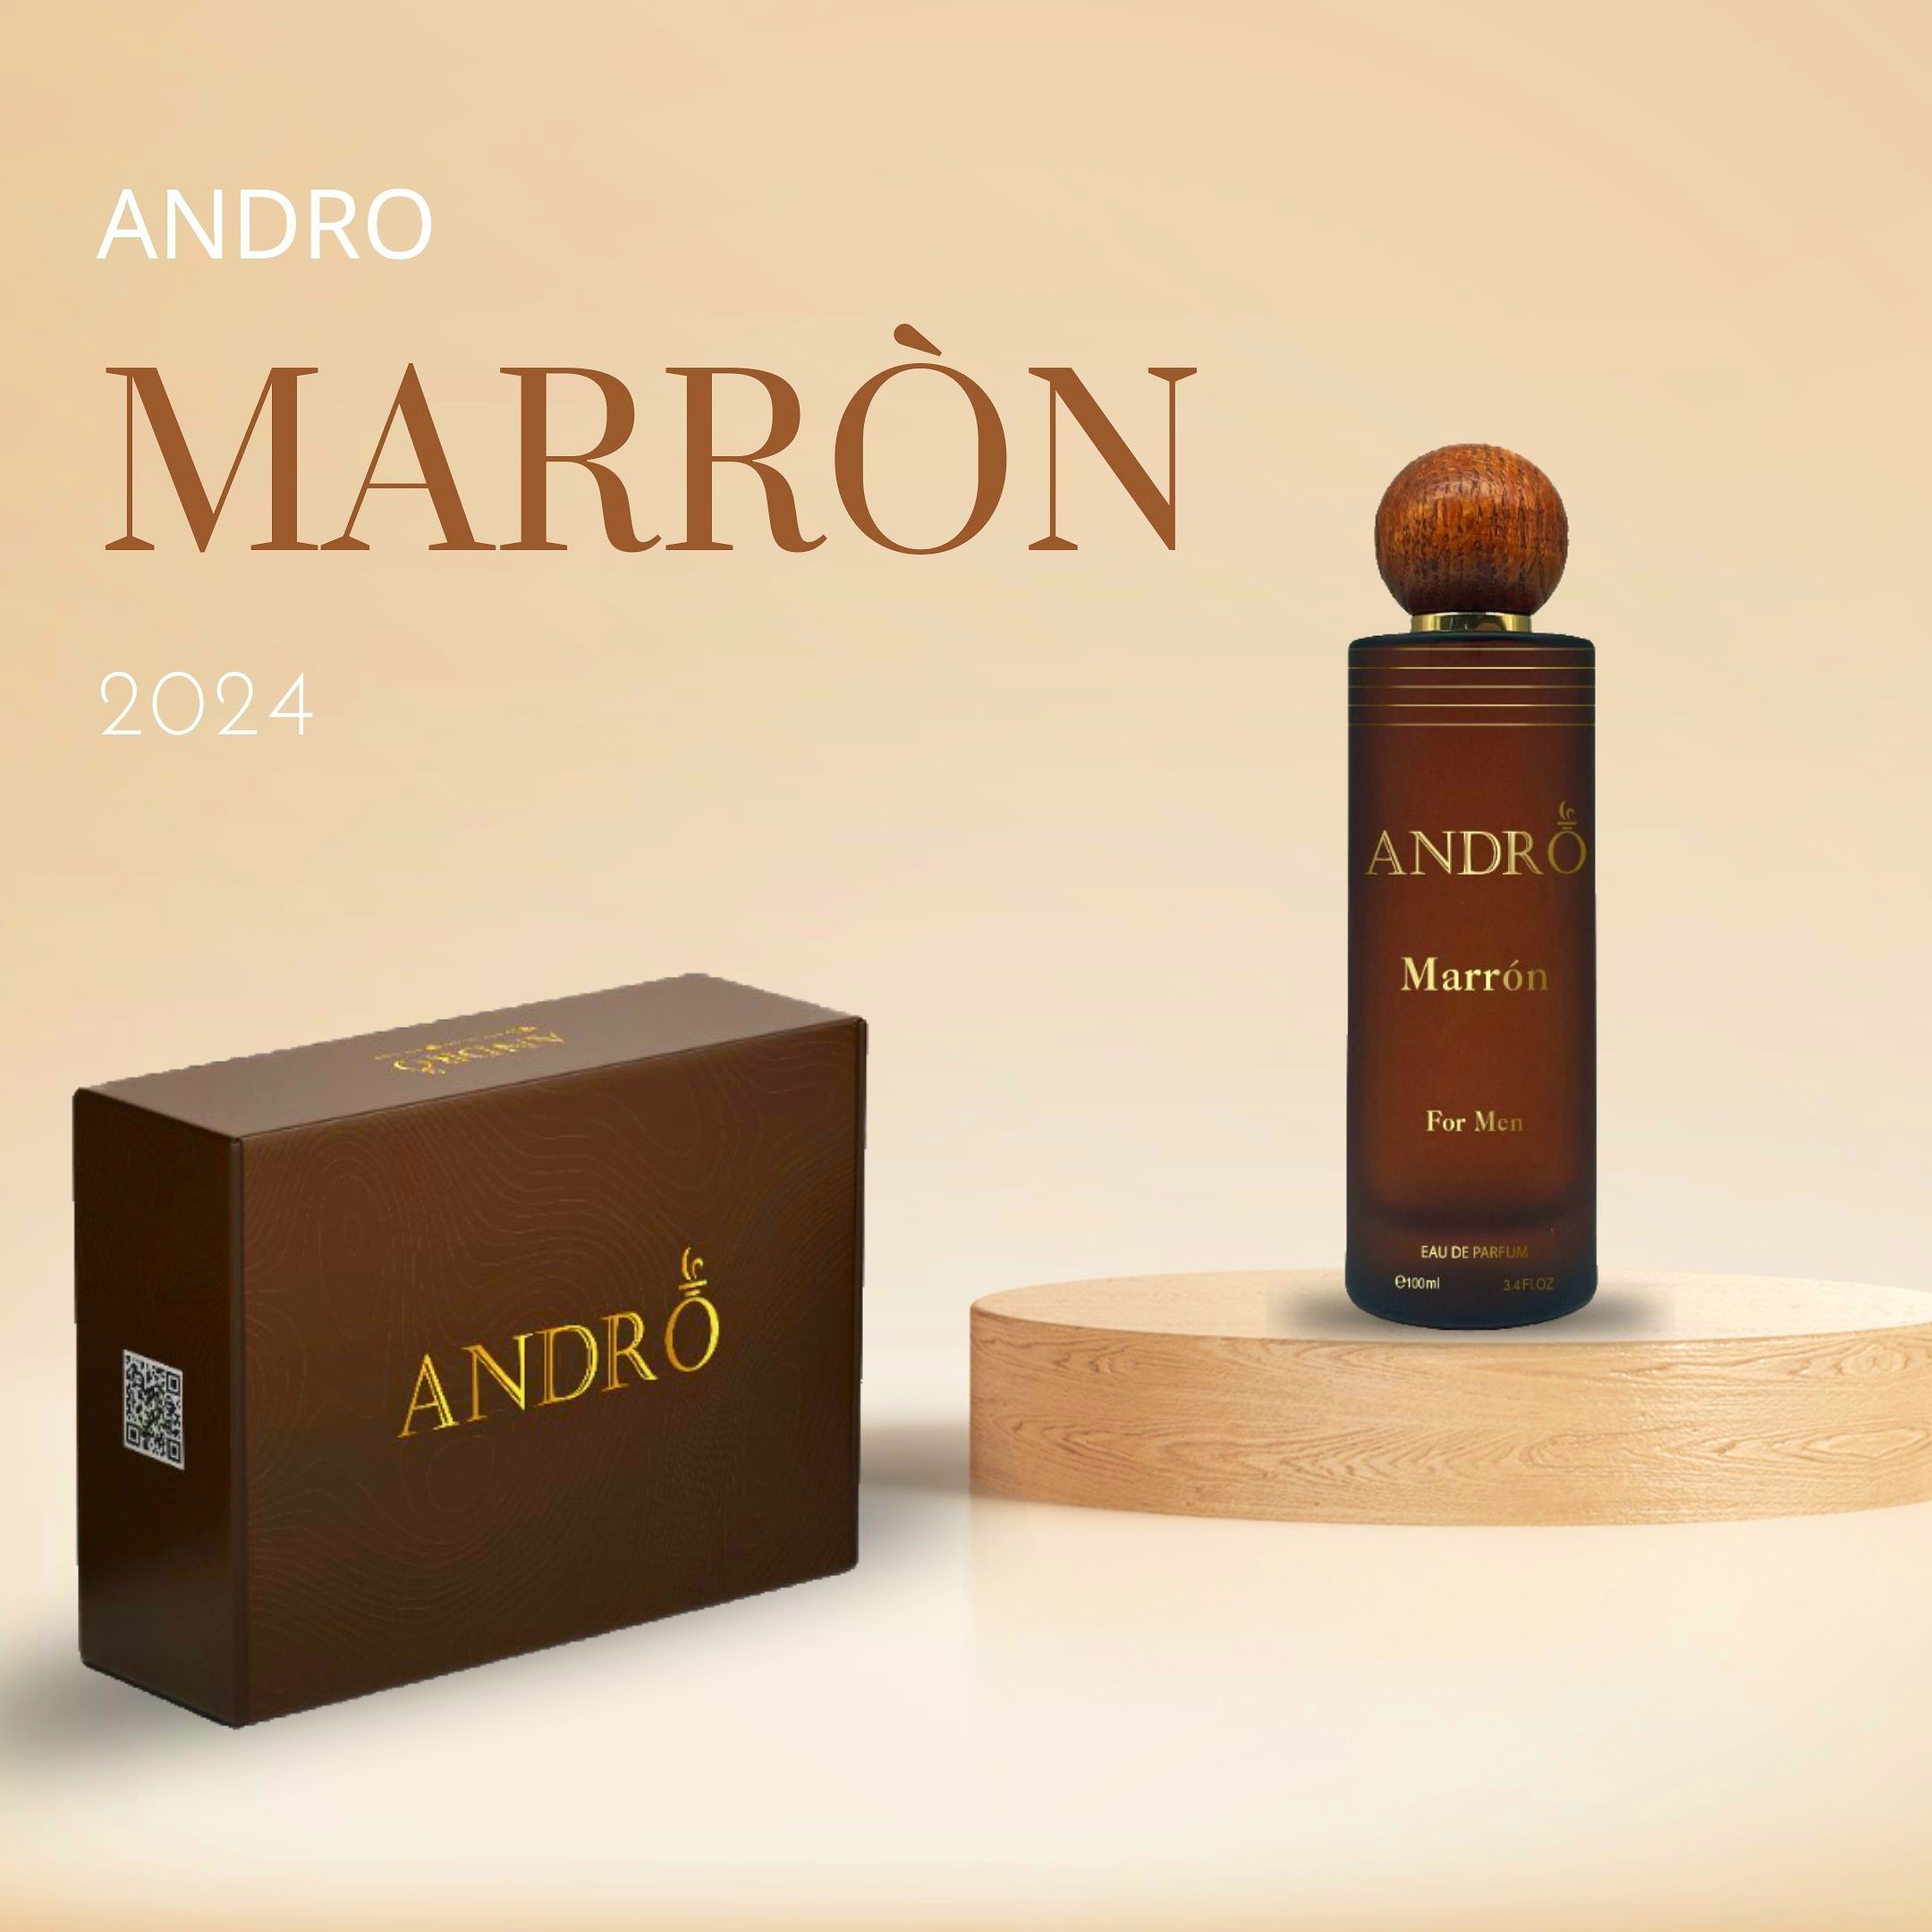 Andro Marron